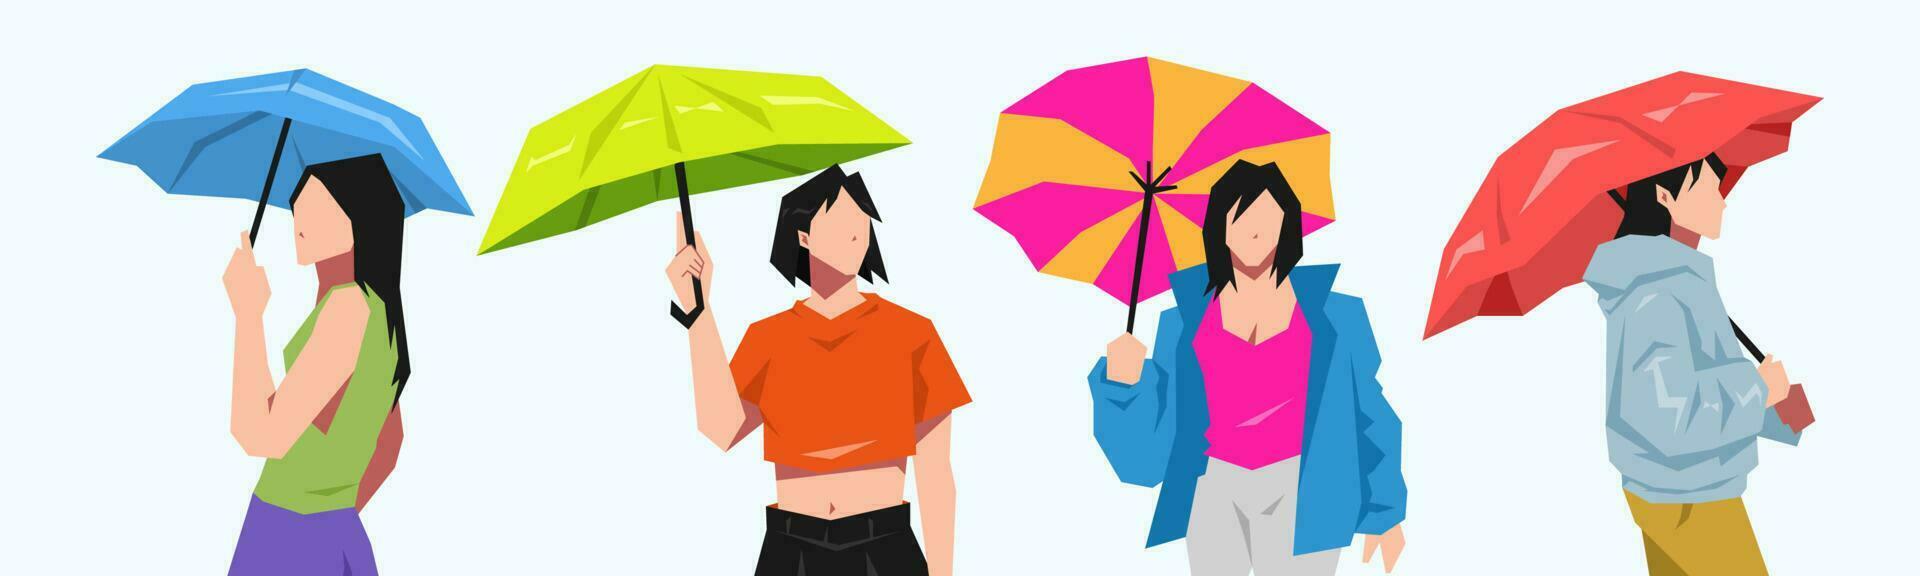 conjunto do alguns lindo jovem meninas segurando guarda-chuvas. clima conceito, calor aceno, chuva, equipamento. desenho animado plano vetor ilustração.